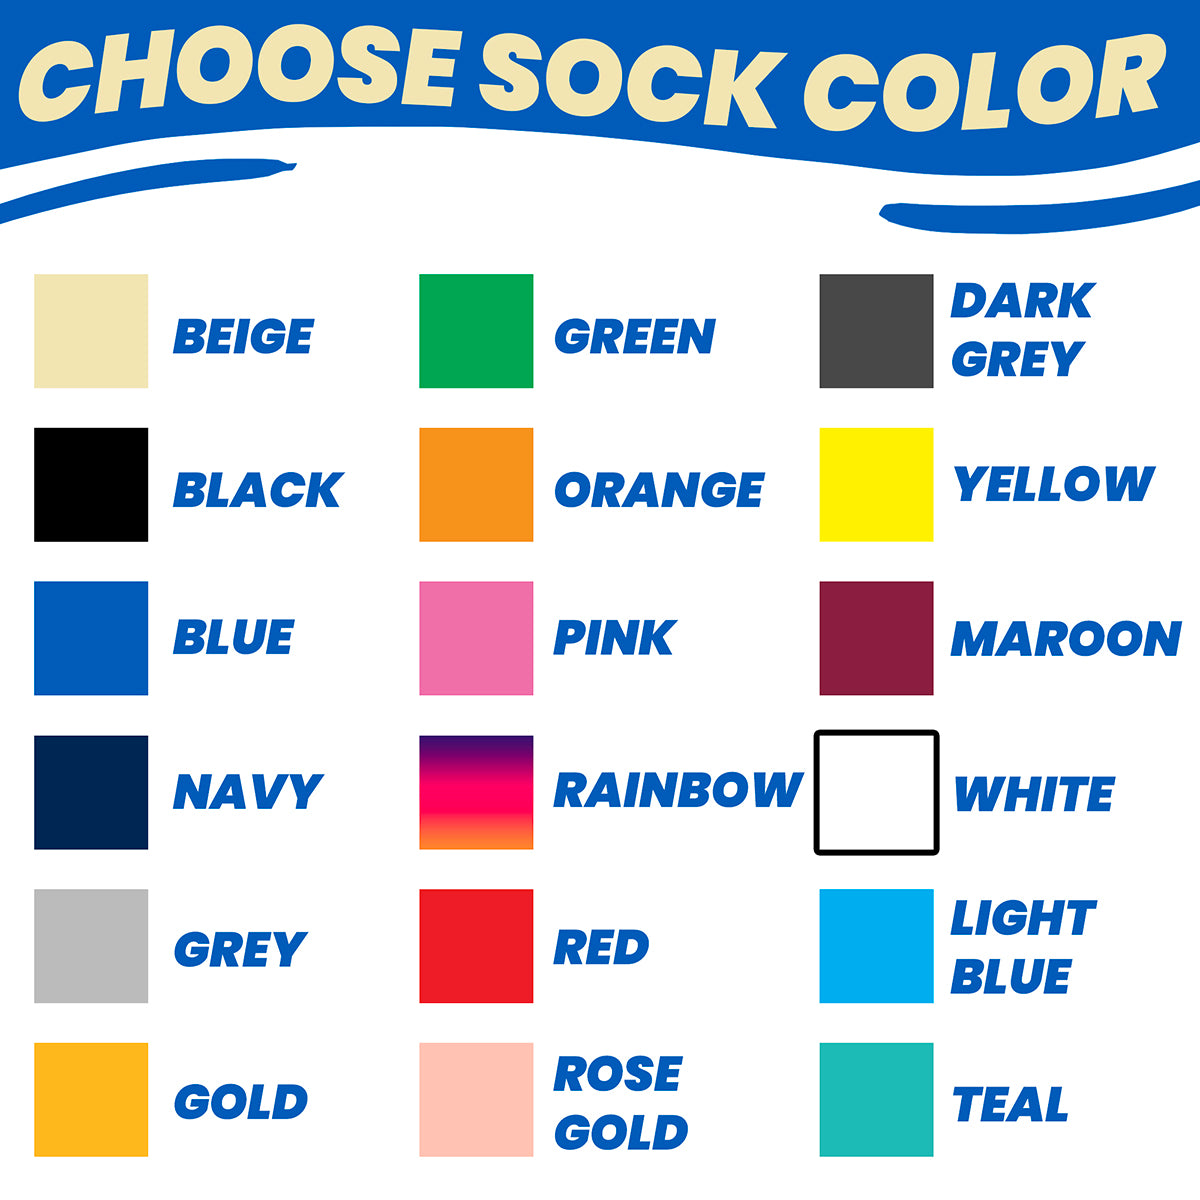 Custom Gift Socks for Boss